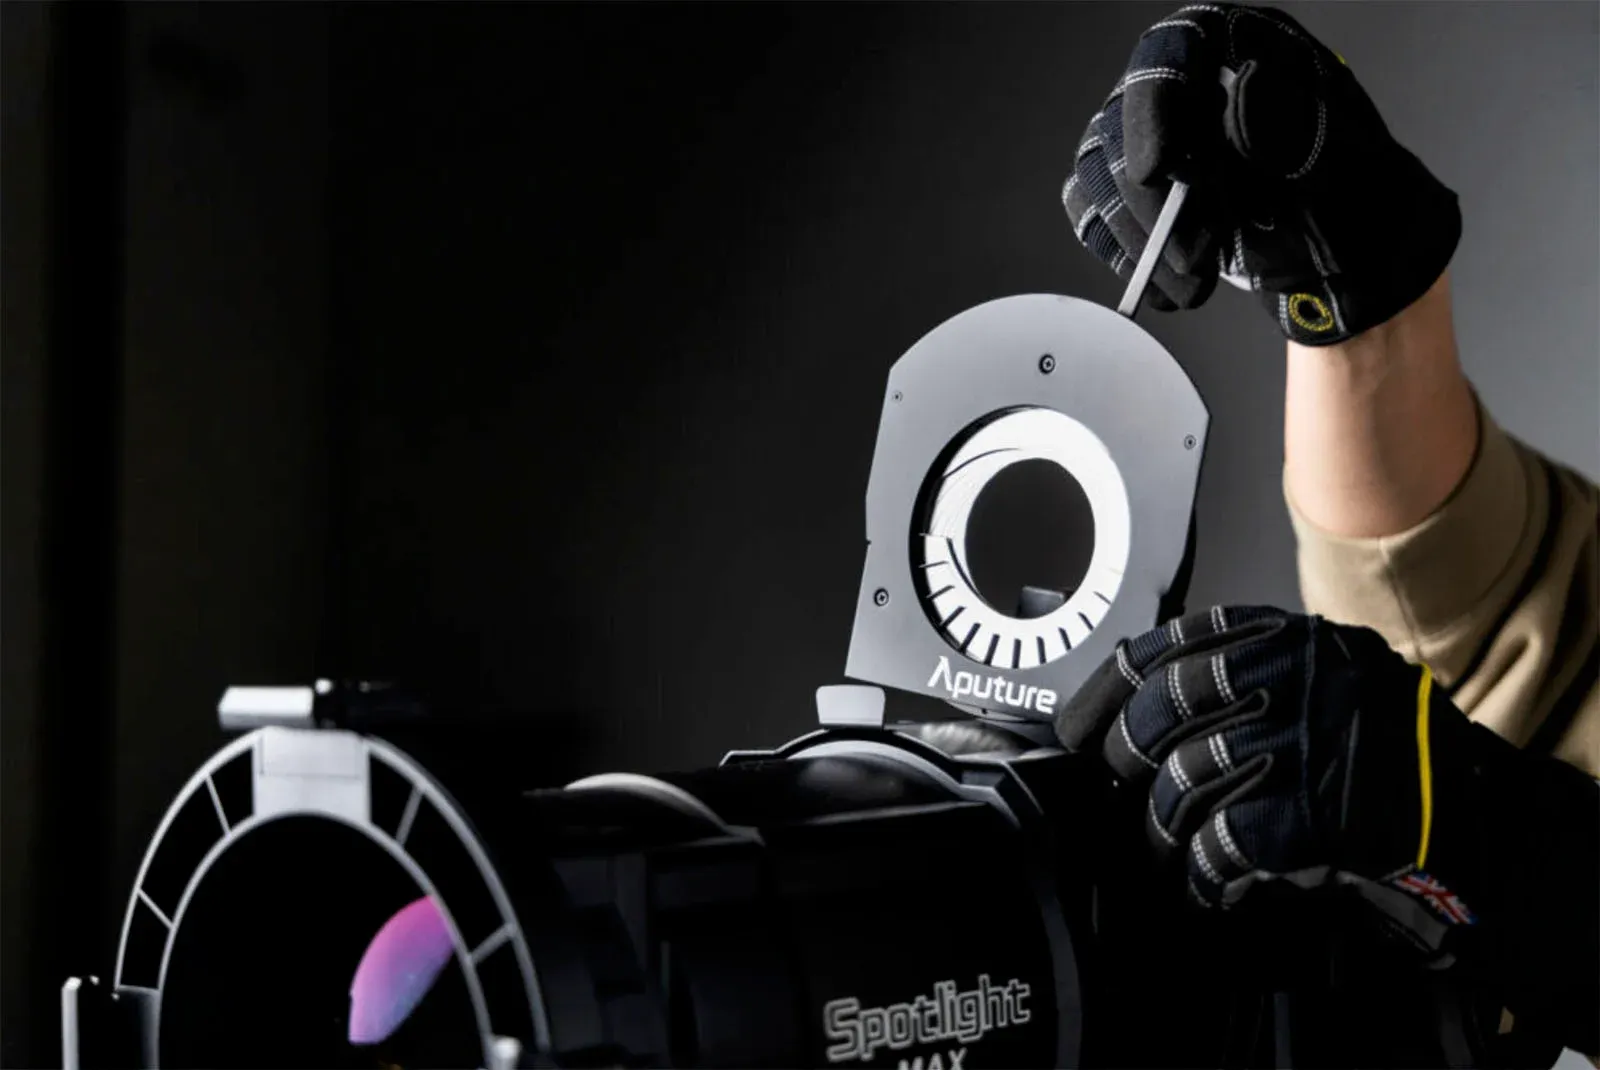 Aputure ra mắt Spotlight Max Projection Lens, phụ kiện định hình ánh sáng cho người dùng chuyên nghiệp